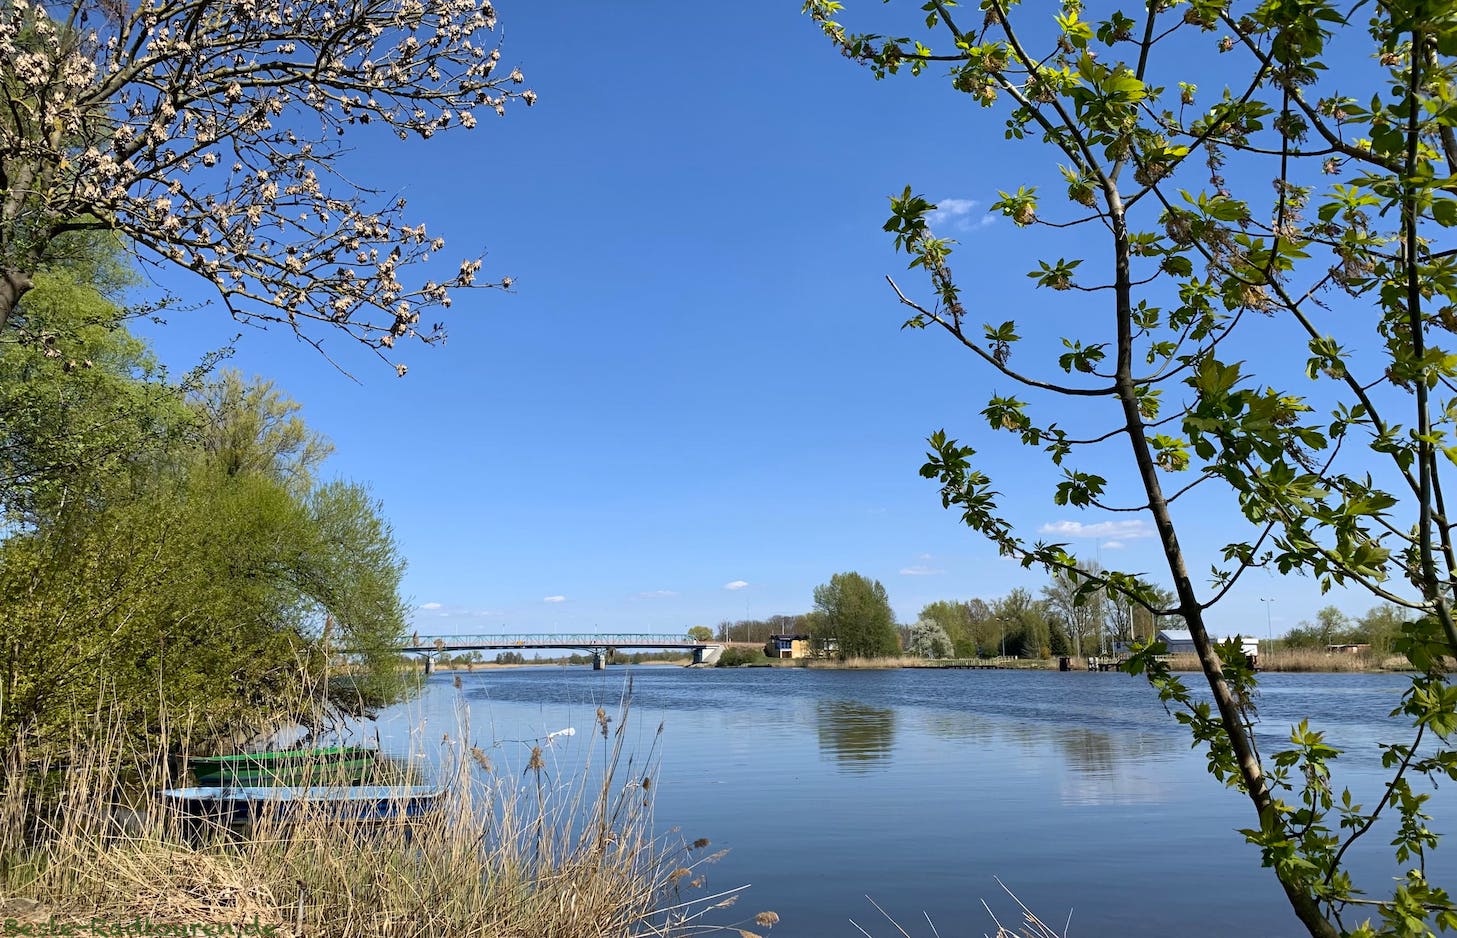 Foto vom Oderradweg aus: Oder-Ufer bei Mescherin, Brücke nach Gryfino / Greifenhagen (Polen)